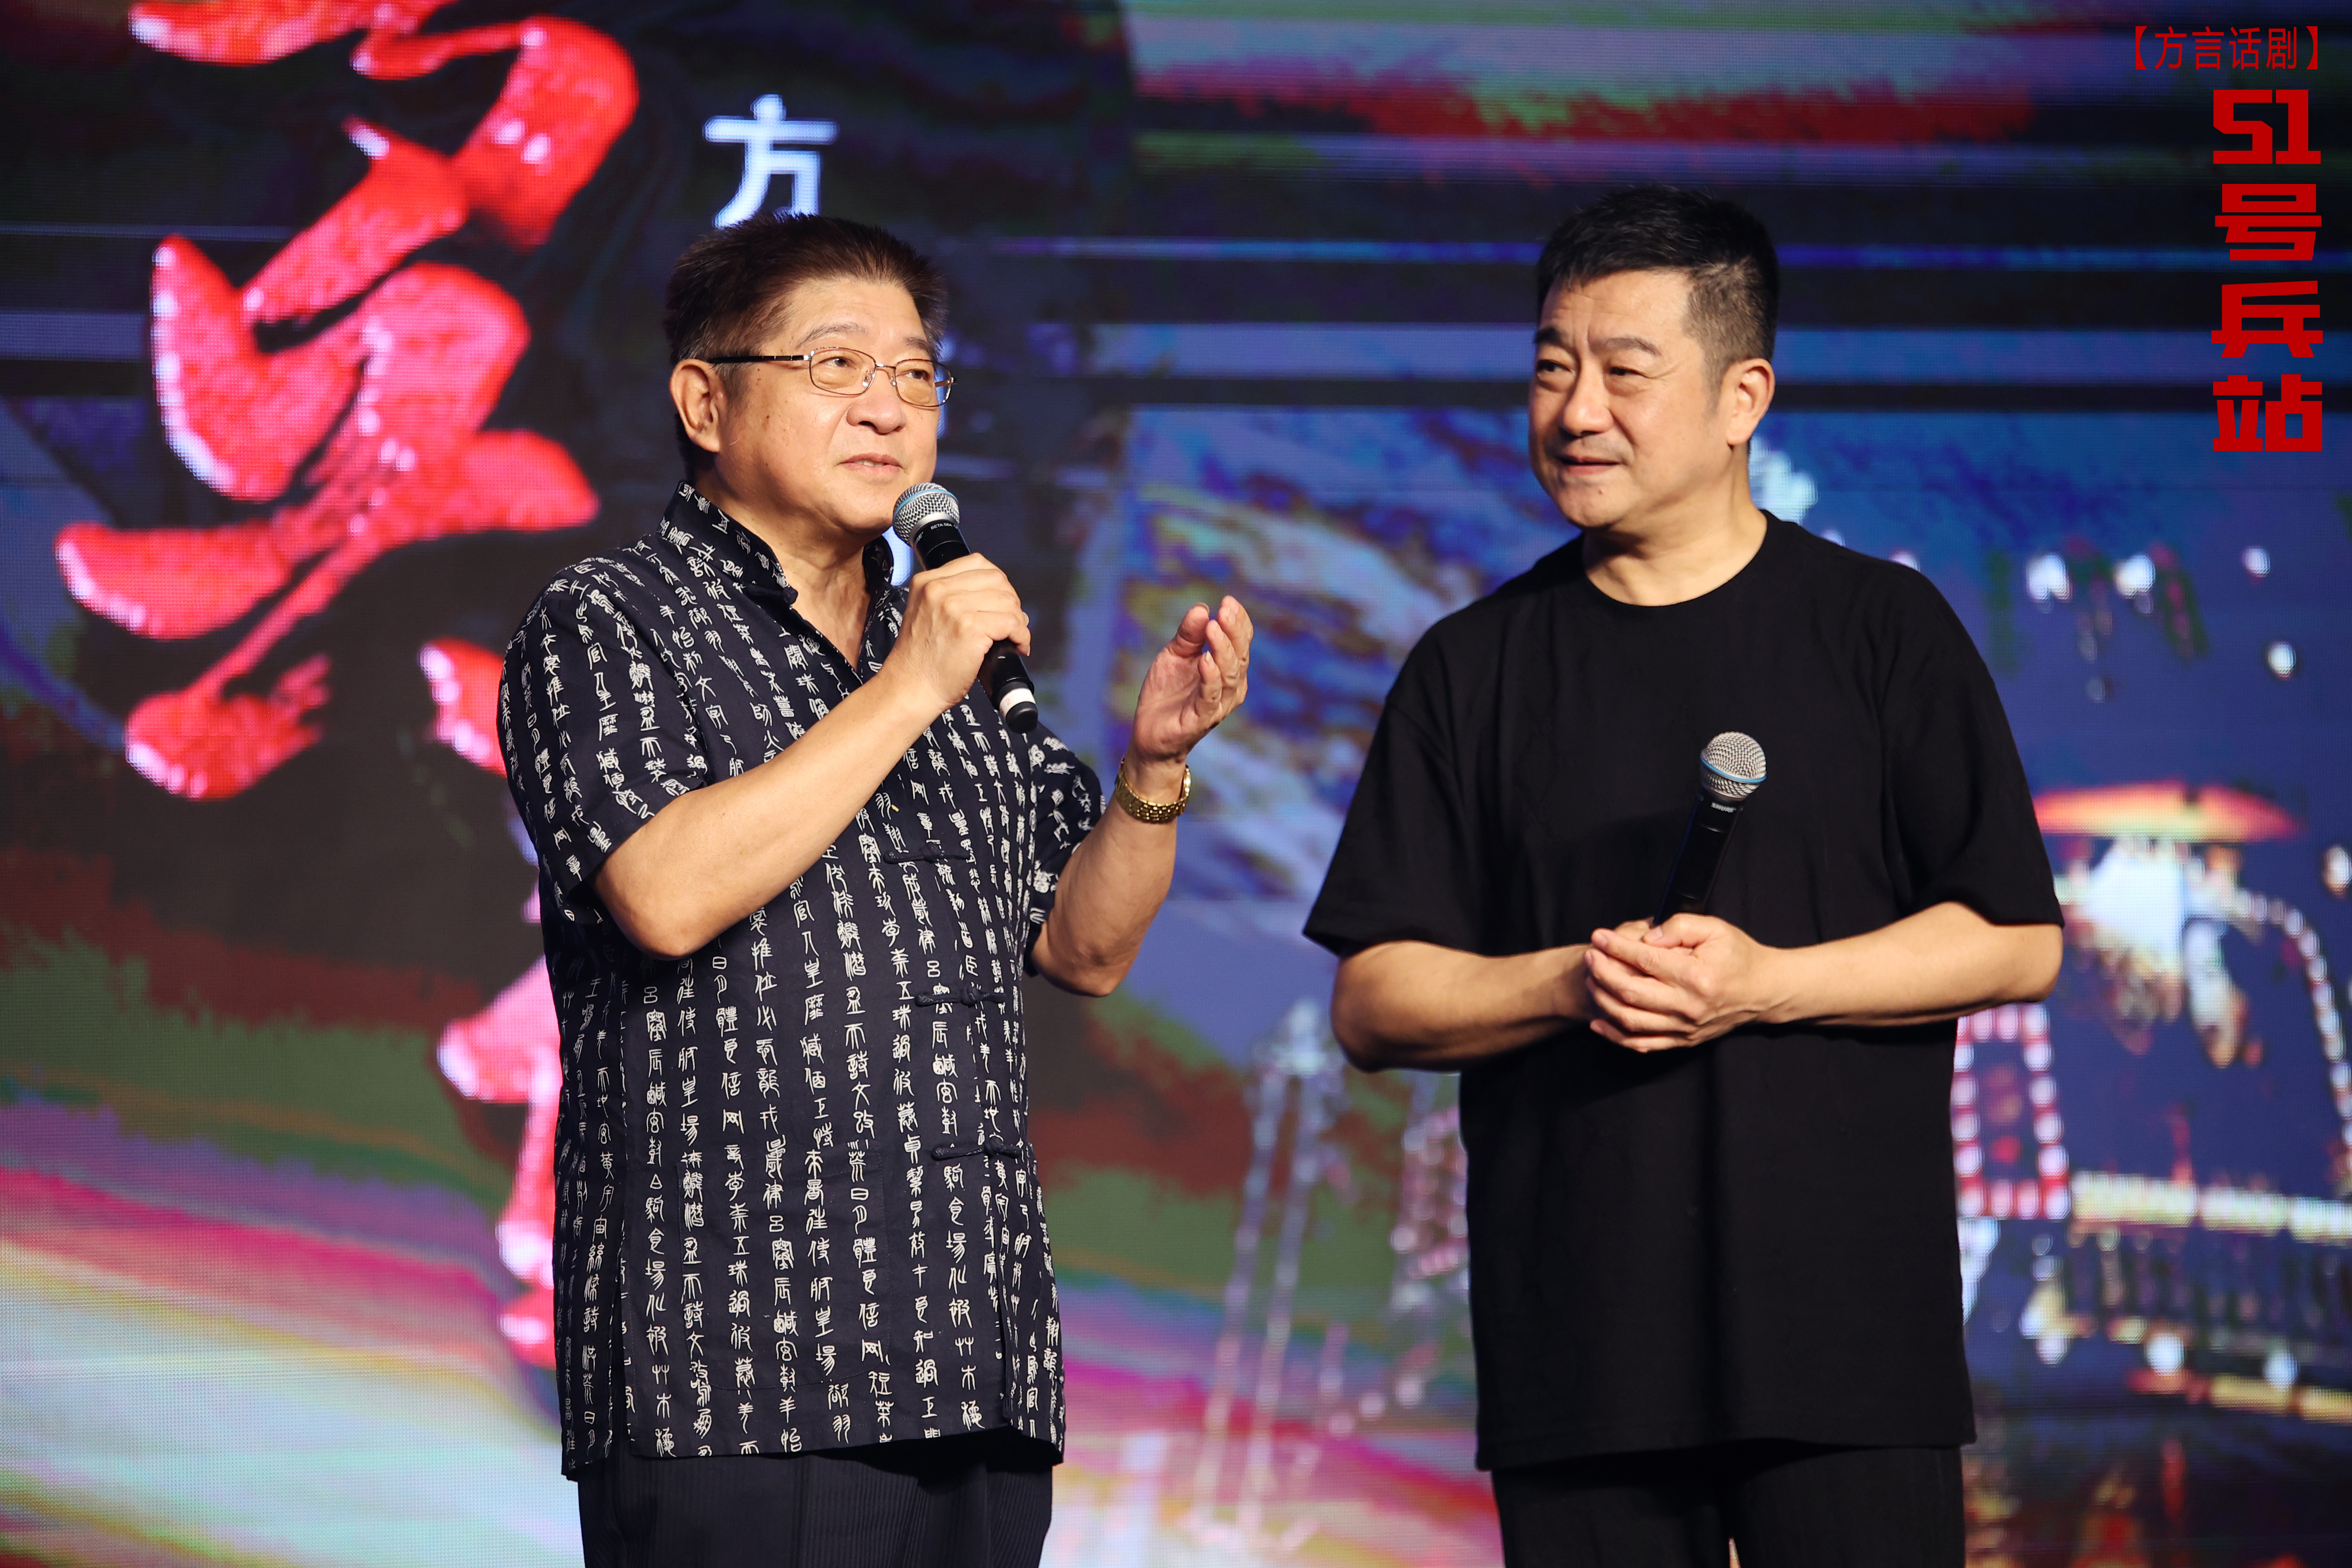 Producer - Wang Rugang (left) and Sun Xuchun (right).